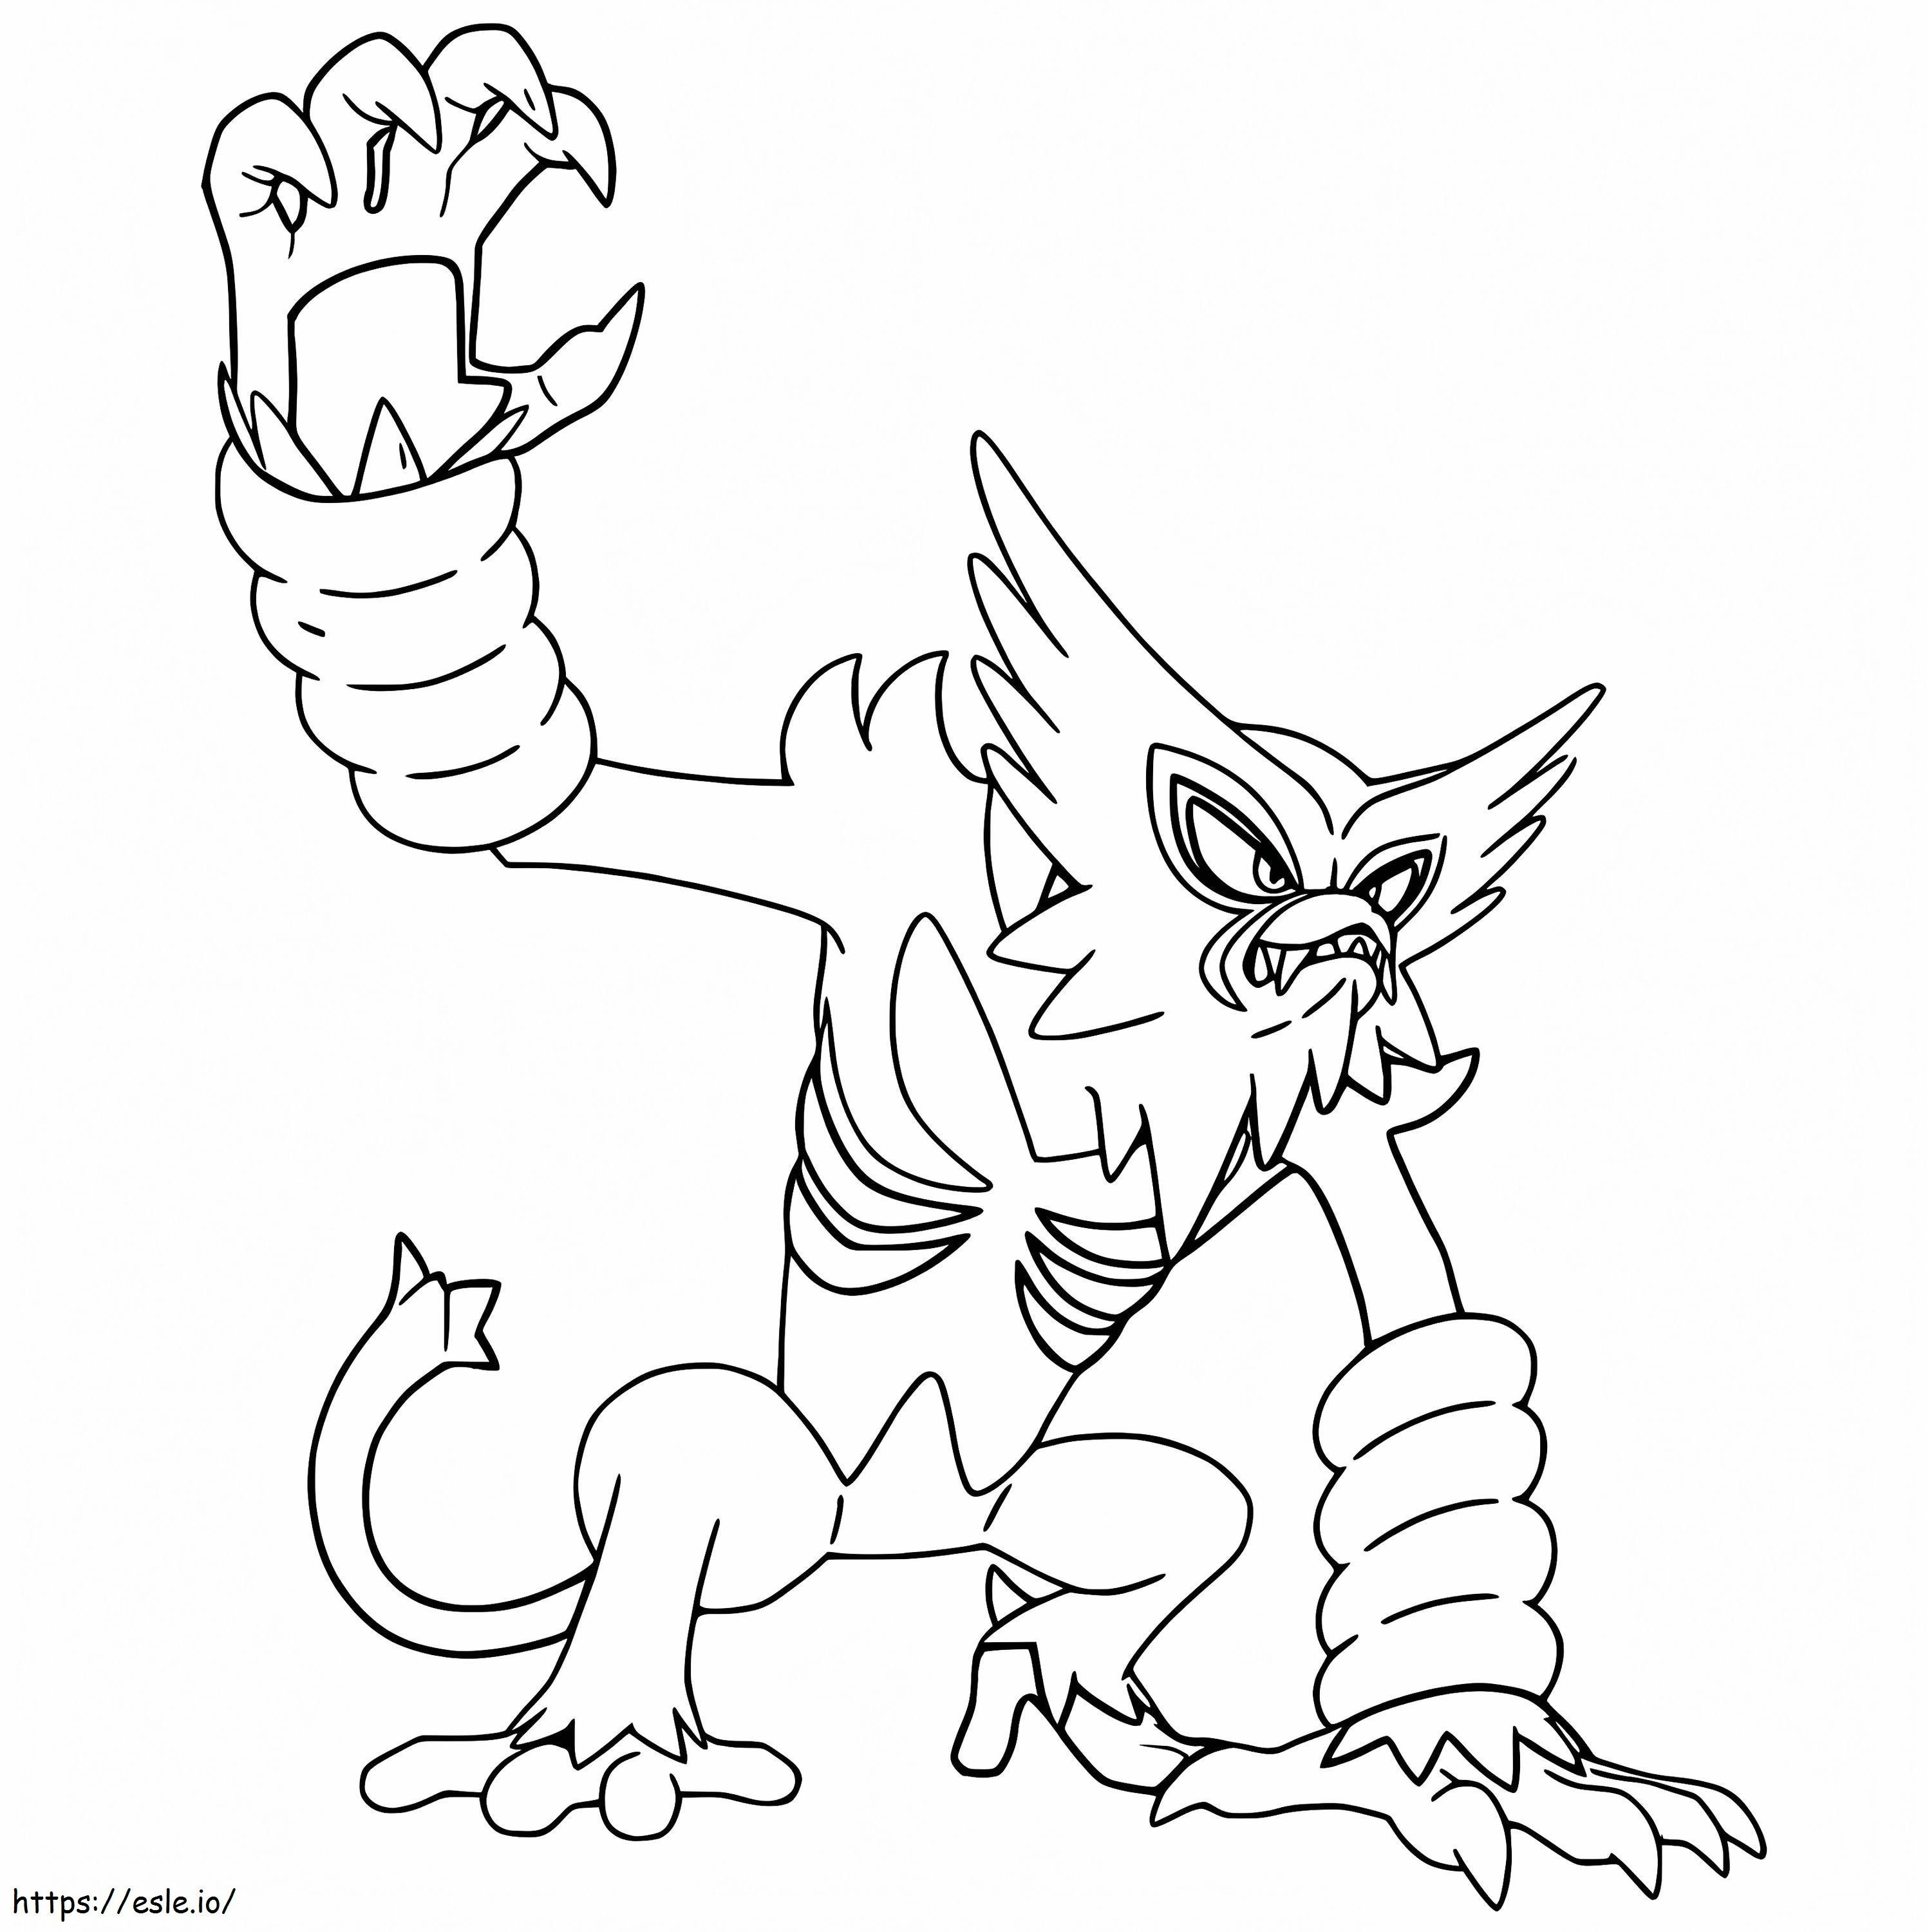 Zarude-Pokémon ausmalbilder